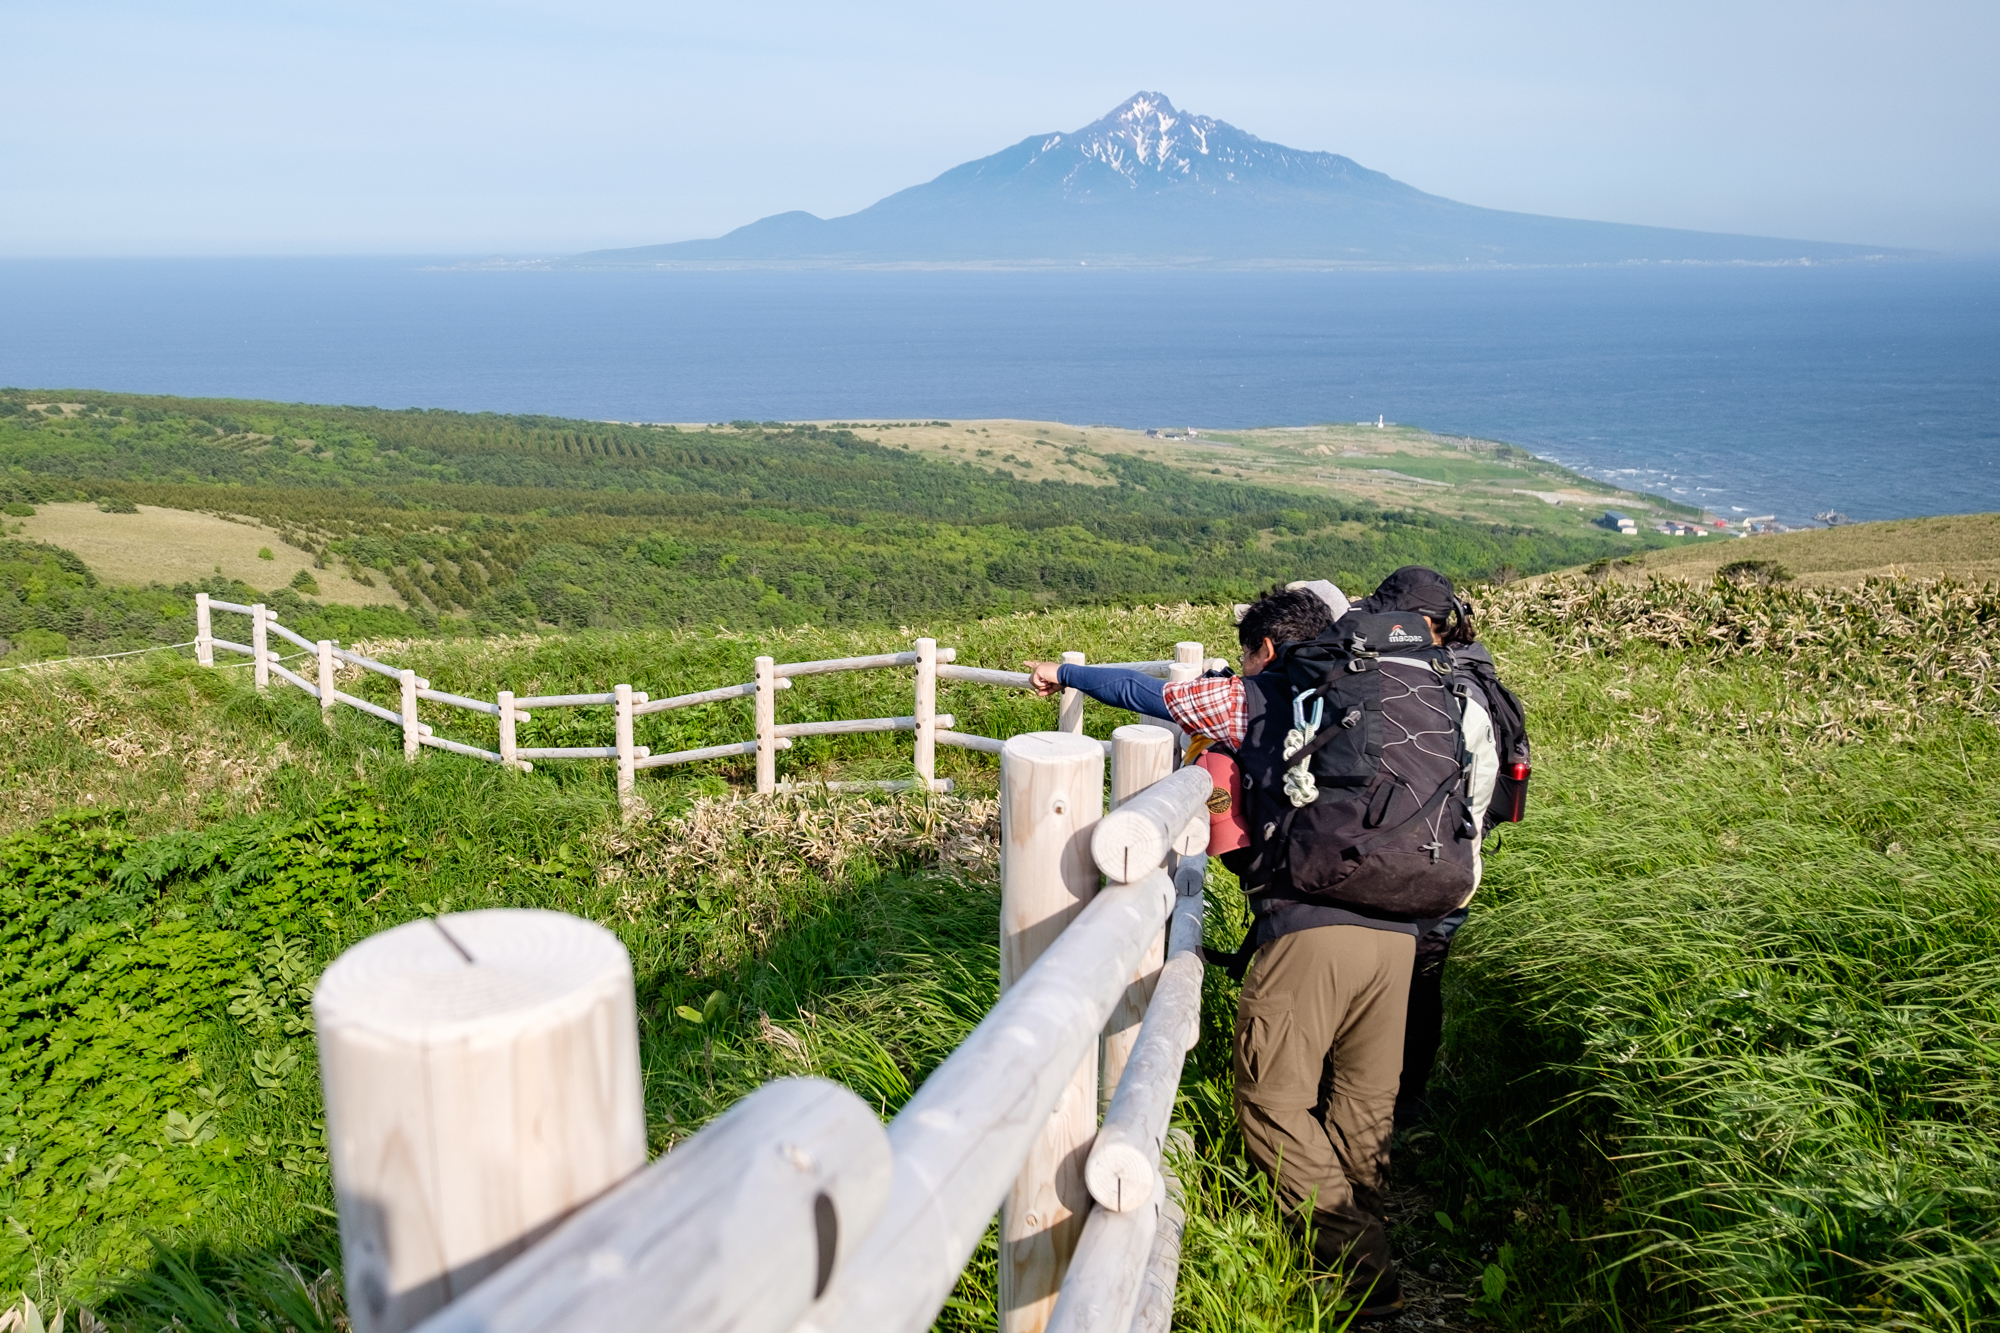 Views of Mount Rishiri, or Rishiri Fuji, from the trail on Rebun